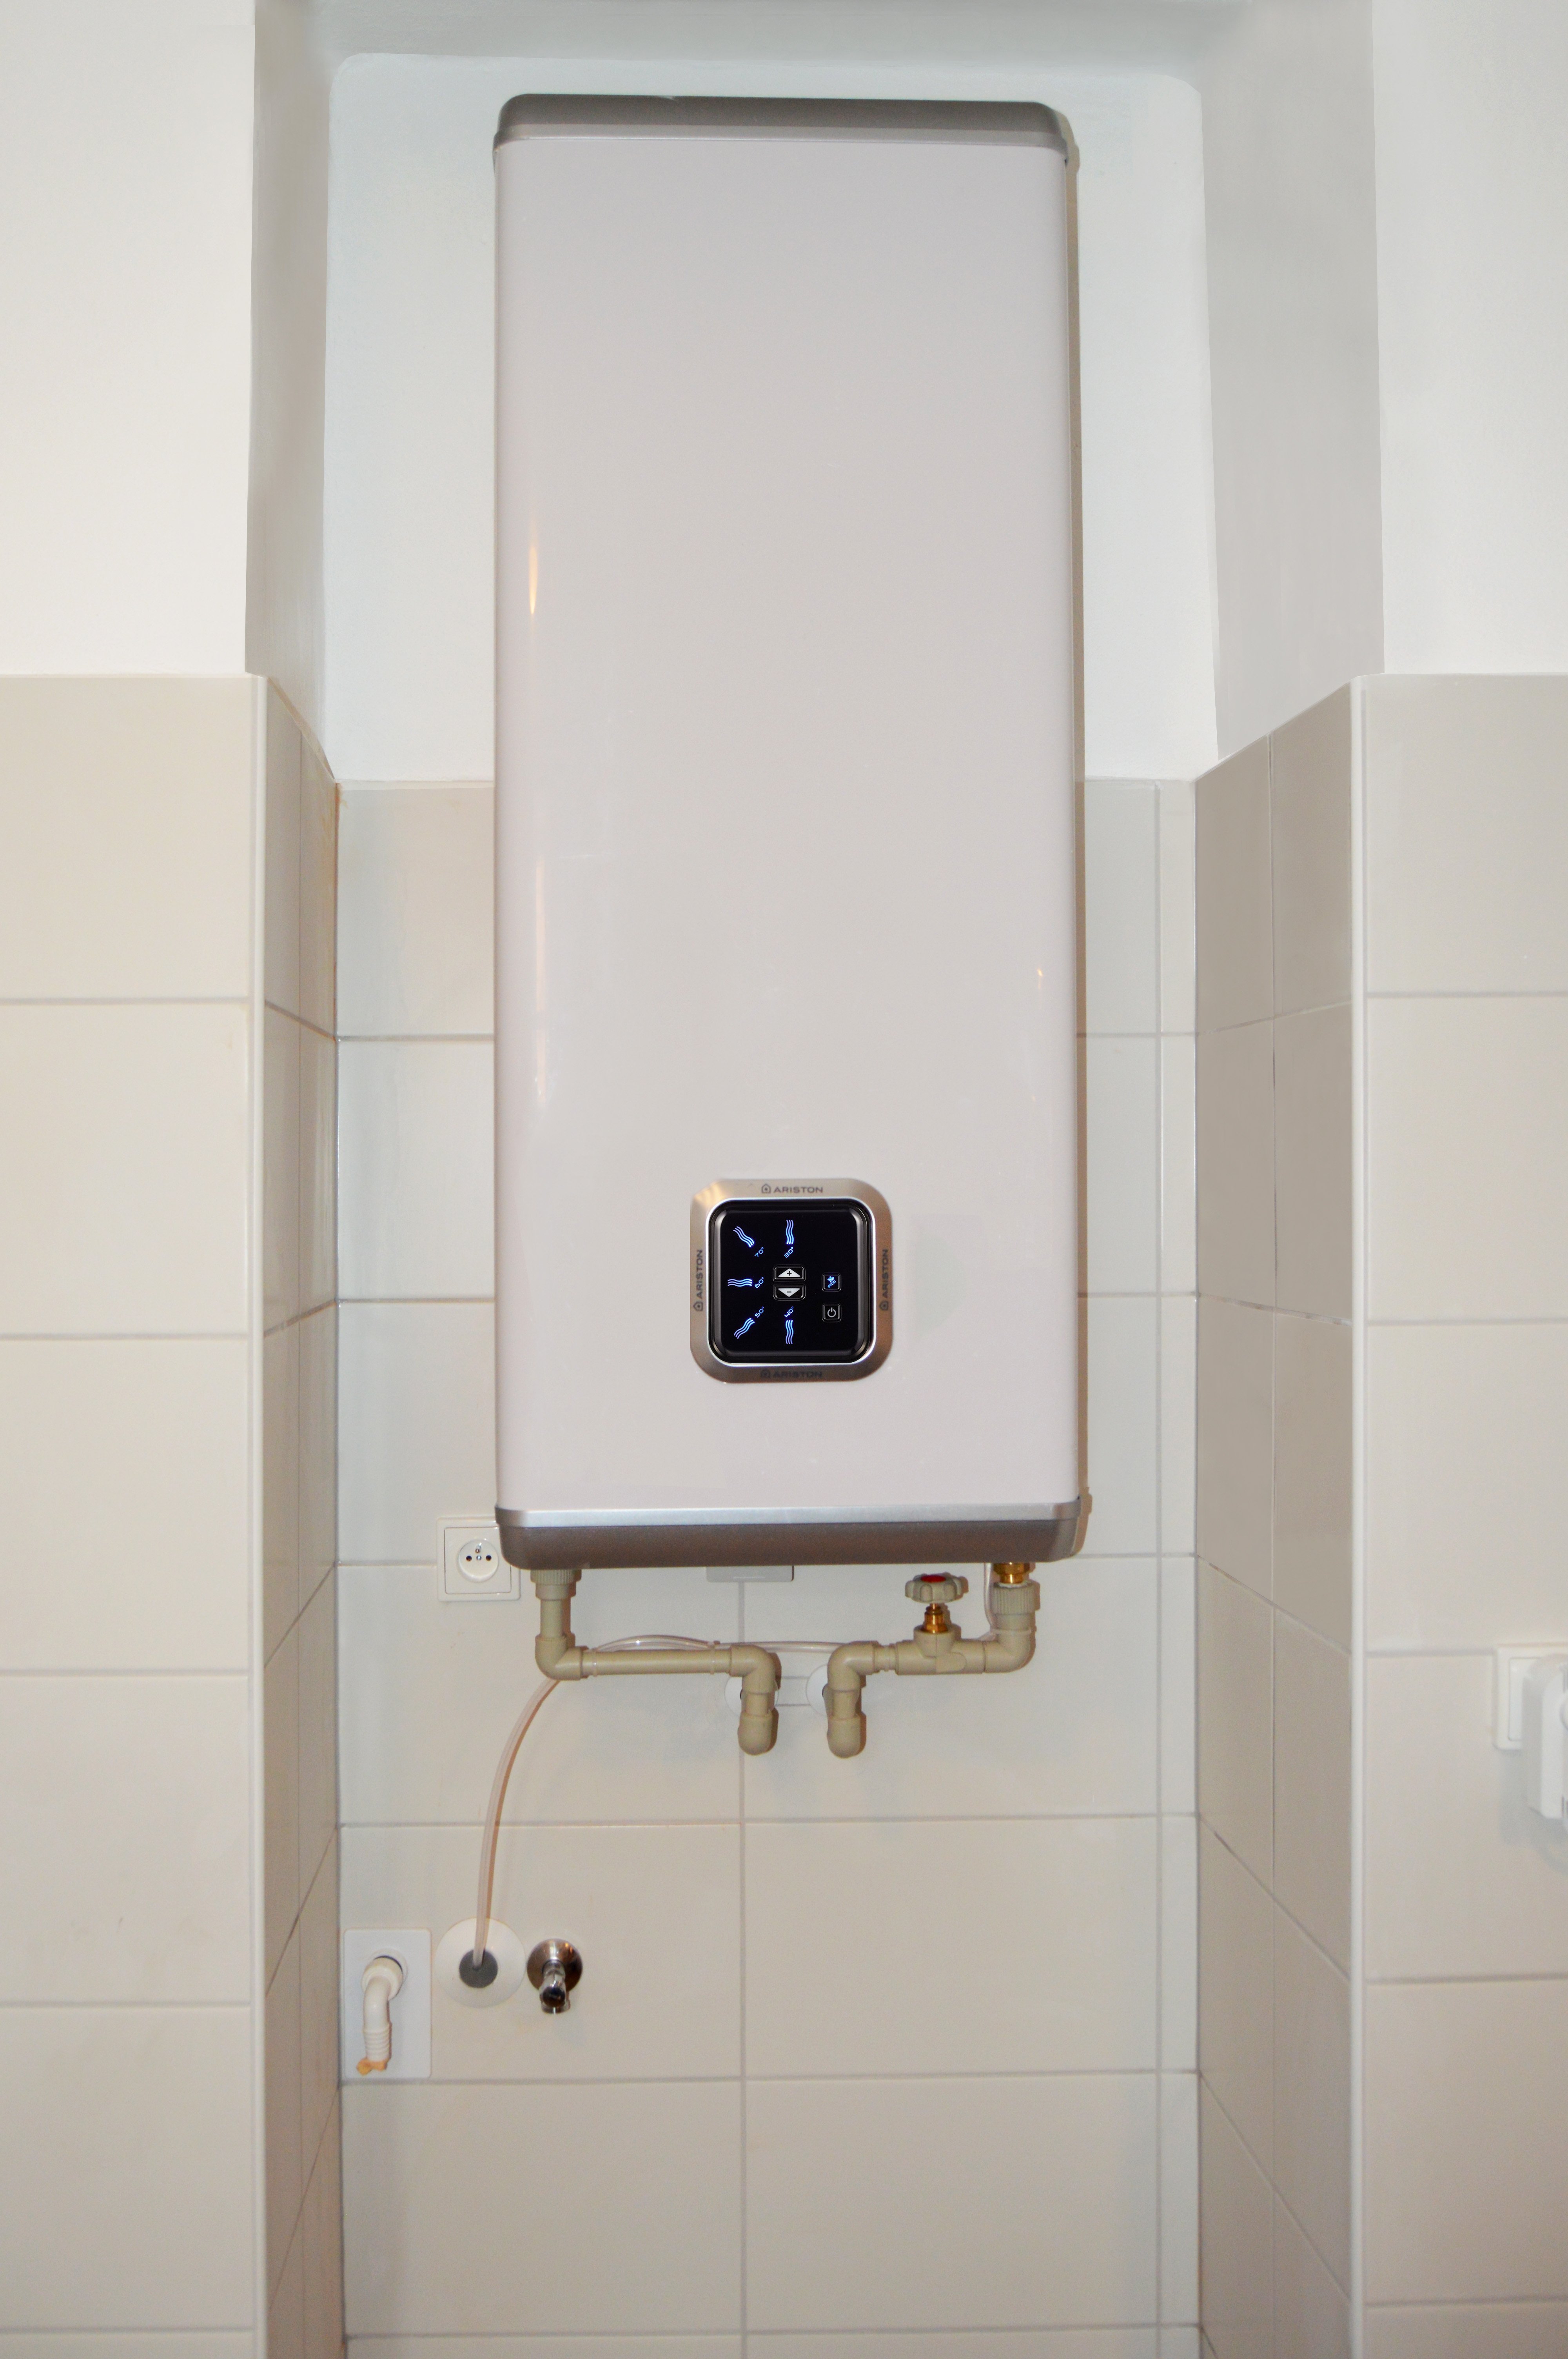 Rekonstrukce koupelny - Zásobníkový elektrický ohřívač vody Ariston Velis VLS 100 je možné instalovat ve svislé i vodorovné pozici a má ECO funkci pro úsporu energie